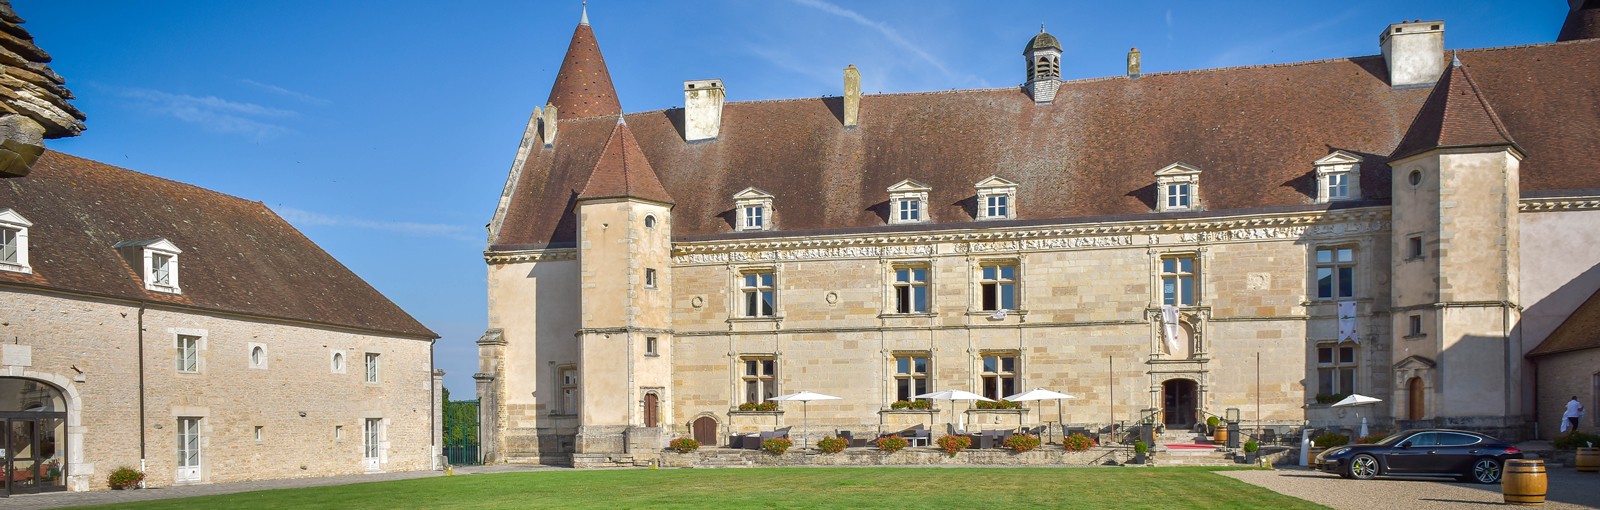 Chateau-Hôtel Bourgogne